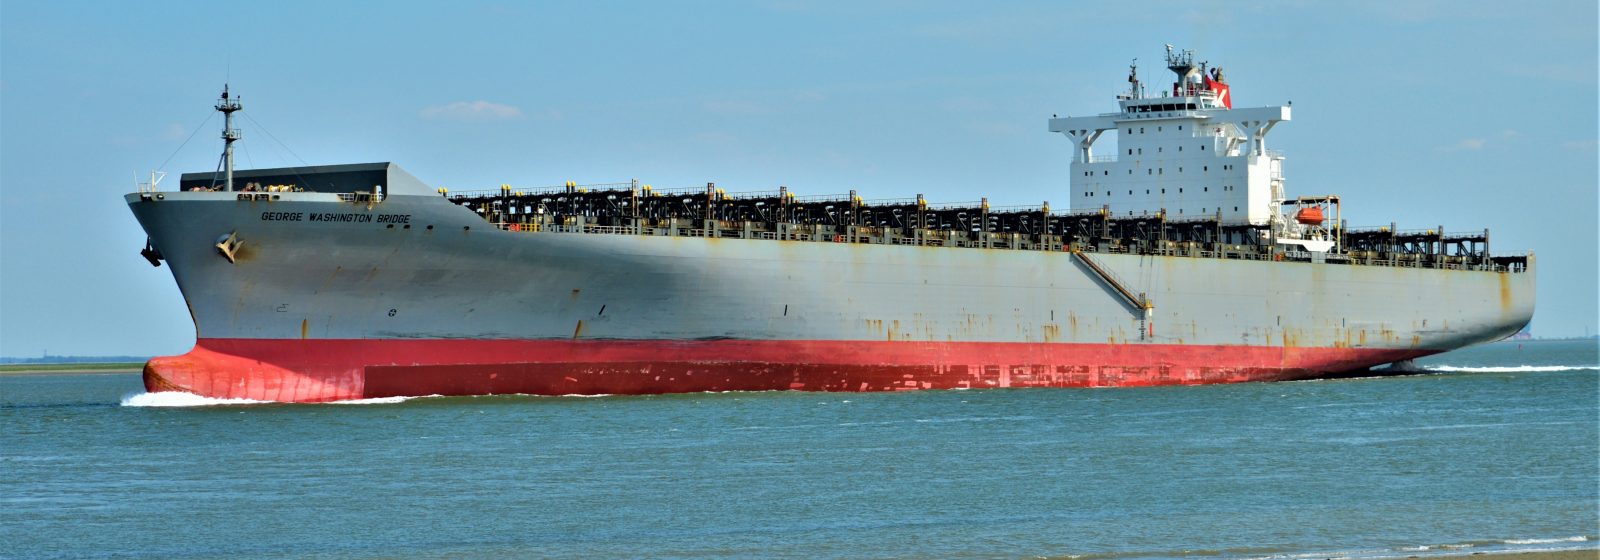 Een leeg containerschip van 5.624 teu afvarend op de Westerschelde.